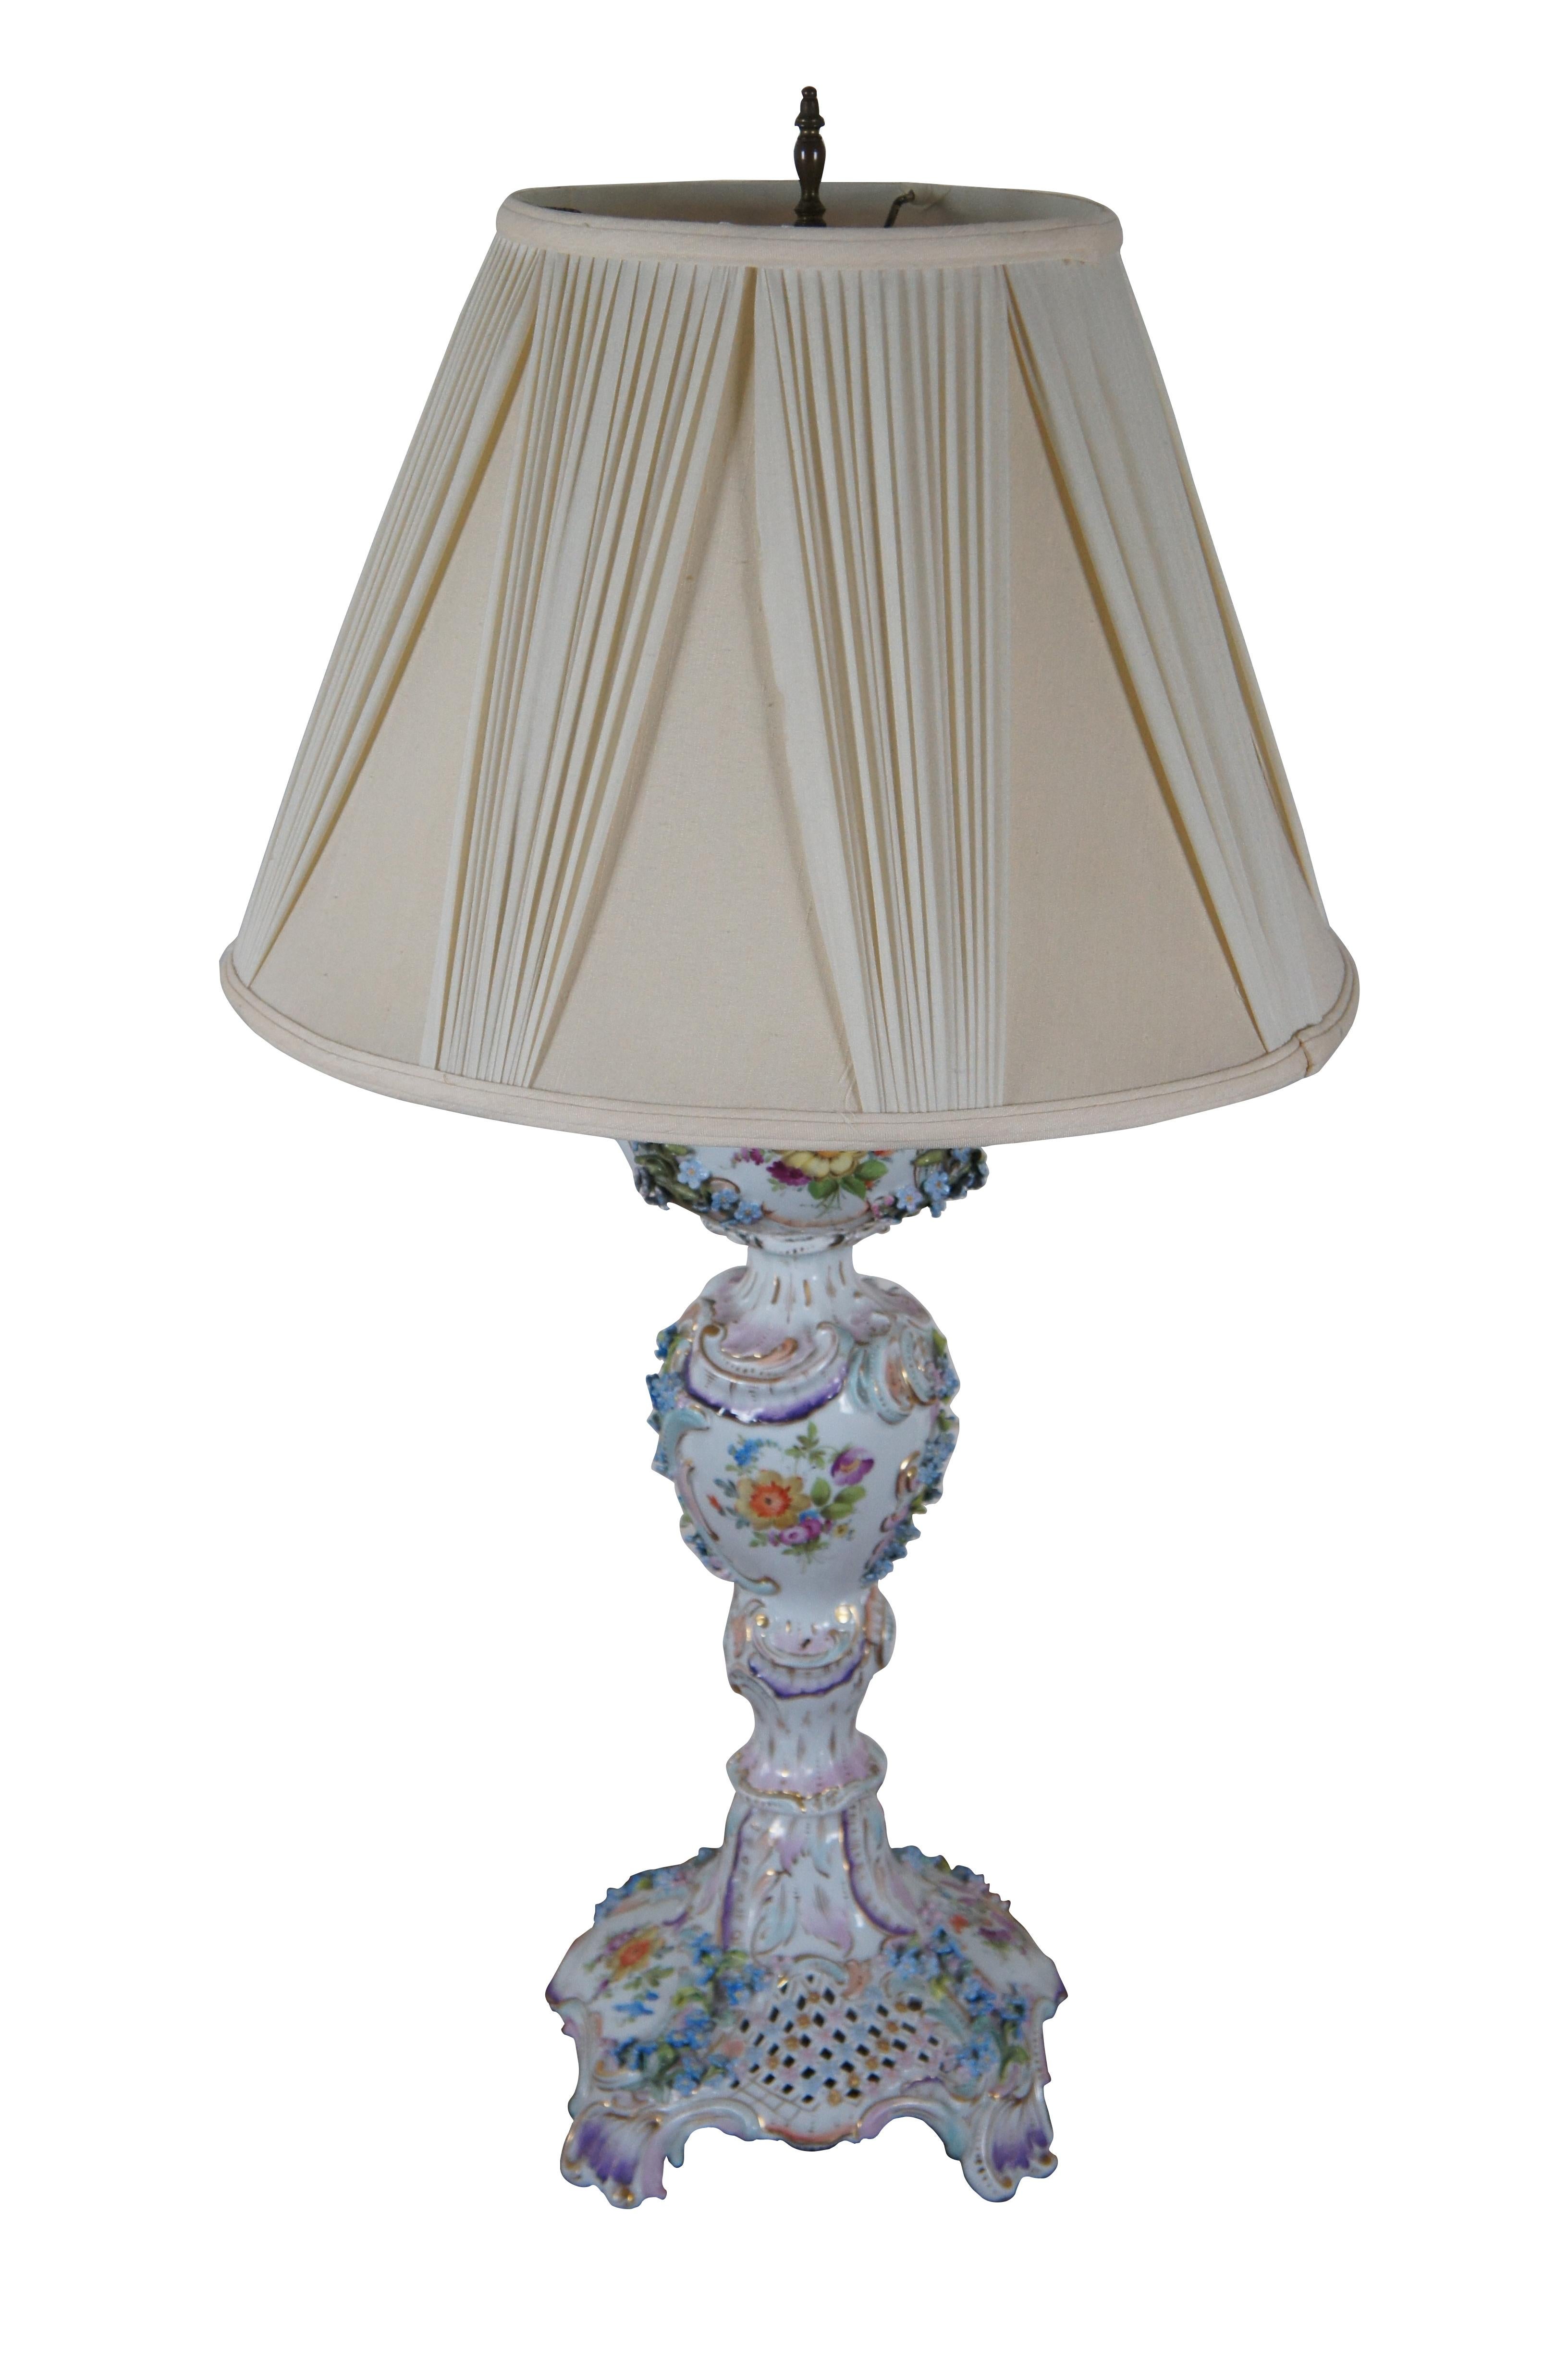 Lampe de table à deux lumières en porcelaine de Carl Thieme Meissen / Dresde de la fin du XIXe siècle - début du XXe siècle. La base réticulée et le corps en forme de lampe à huile / double globe sont rehaussés de gerbes de myosotis en trois